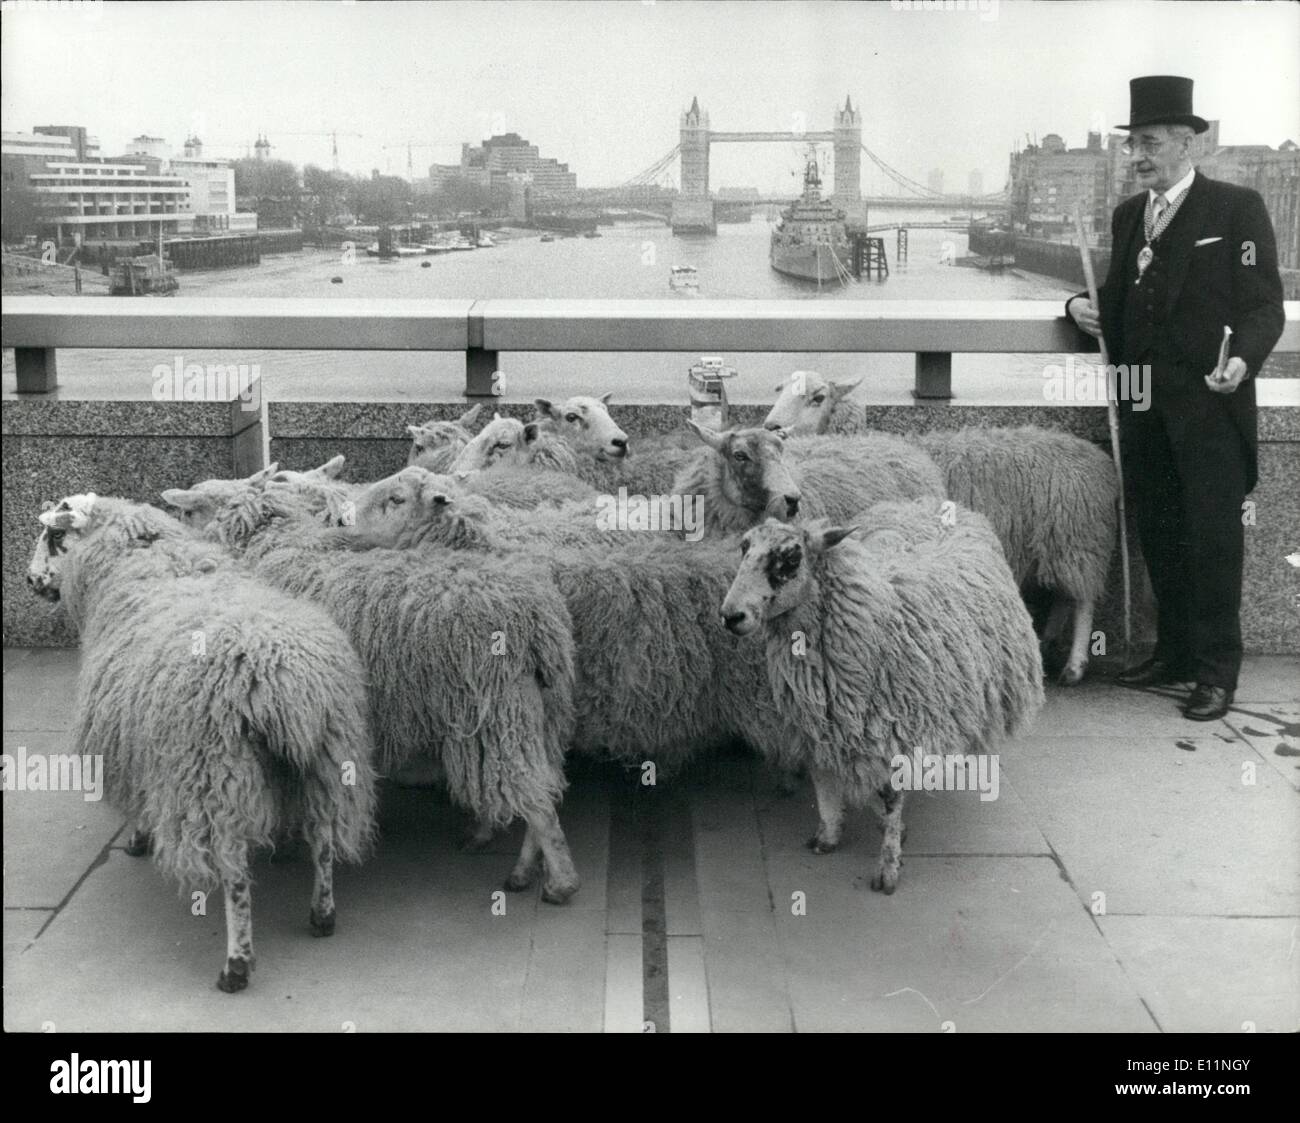 Abril 04, 1979 - GLC Presidente conduce un rebaño de ovejas en el puente de Londres; el Sr. Harold Mote, Presidente del Greater London Council, conducía un rebaño de ovejas cruzando el Puente de Londres en el día de ayer. Porque fue recientemente otorgó la libertad de la ciudad de Londres y uno de los privilegios asociados con esto es poder conducir ovejas en la ciudad durante el Puente de Londres, así como un gesto de gratitud y de mostrar que la libertad significa algo ejerció el antiguo privilegio. La foto muestra el Sr. Foto de stock